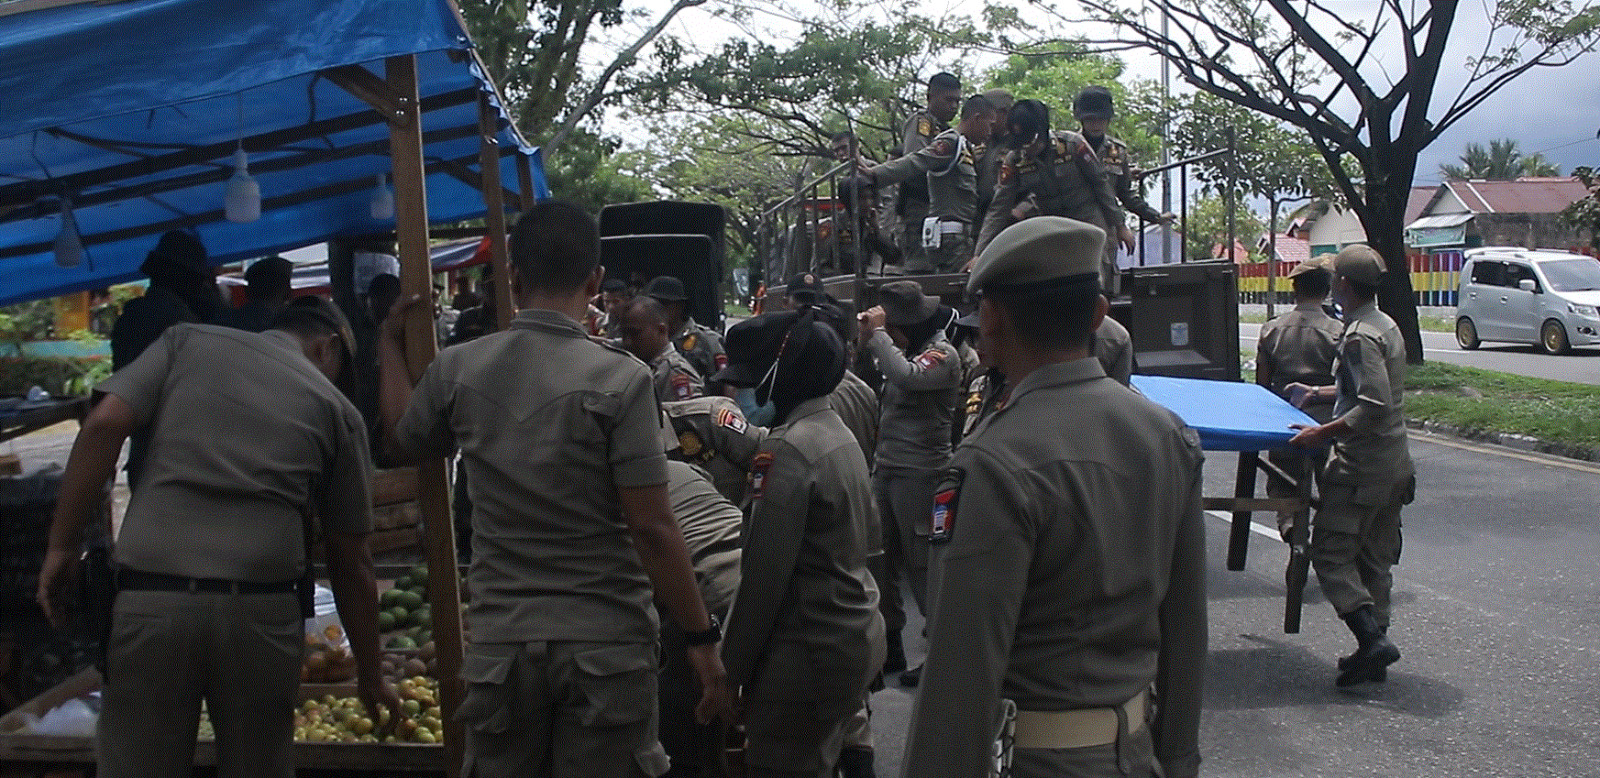 Personel Satpol PP Padang mengangkut lapak PKL ke dalam Mobil yang disediakan (Foto: Humas Satpol PP Padang)